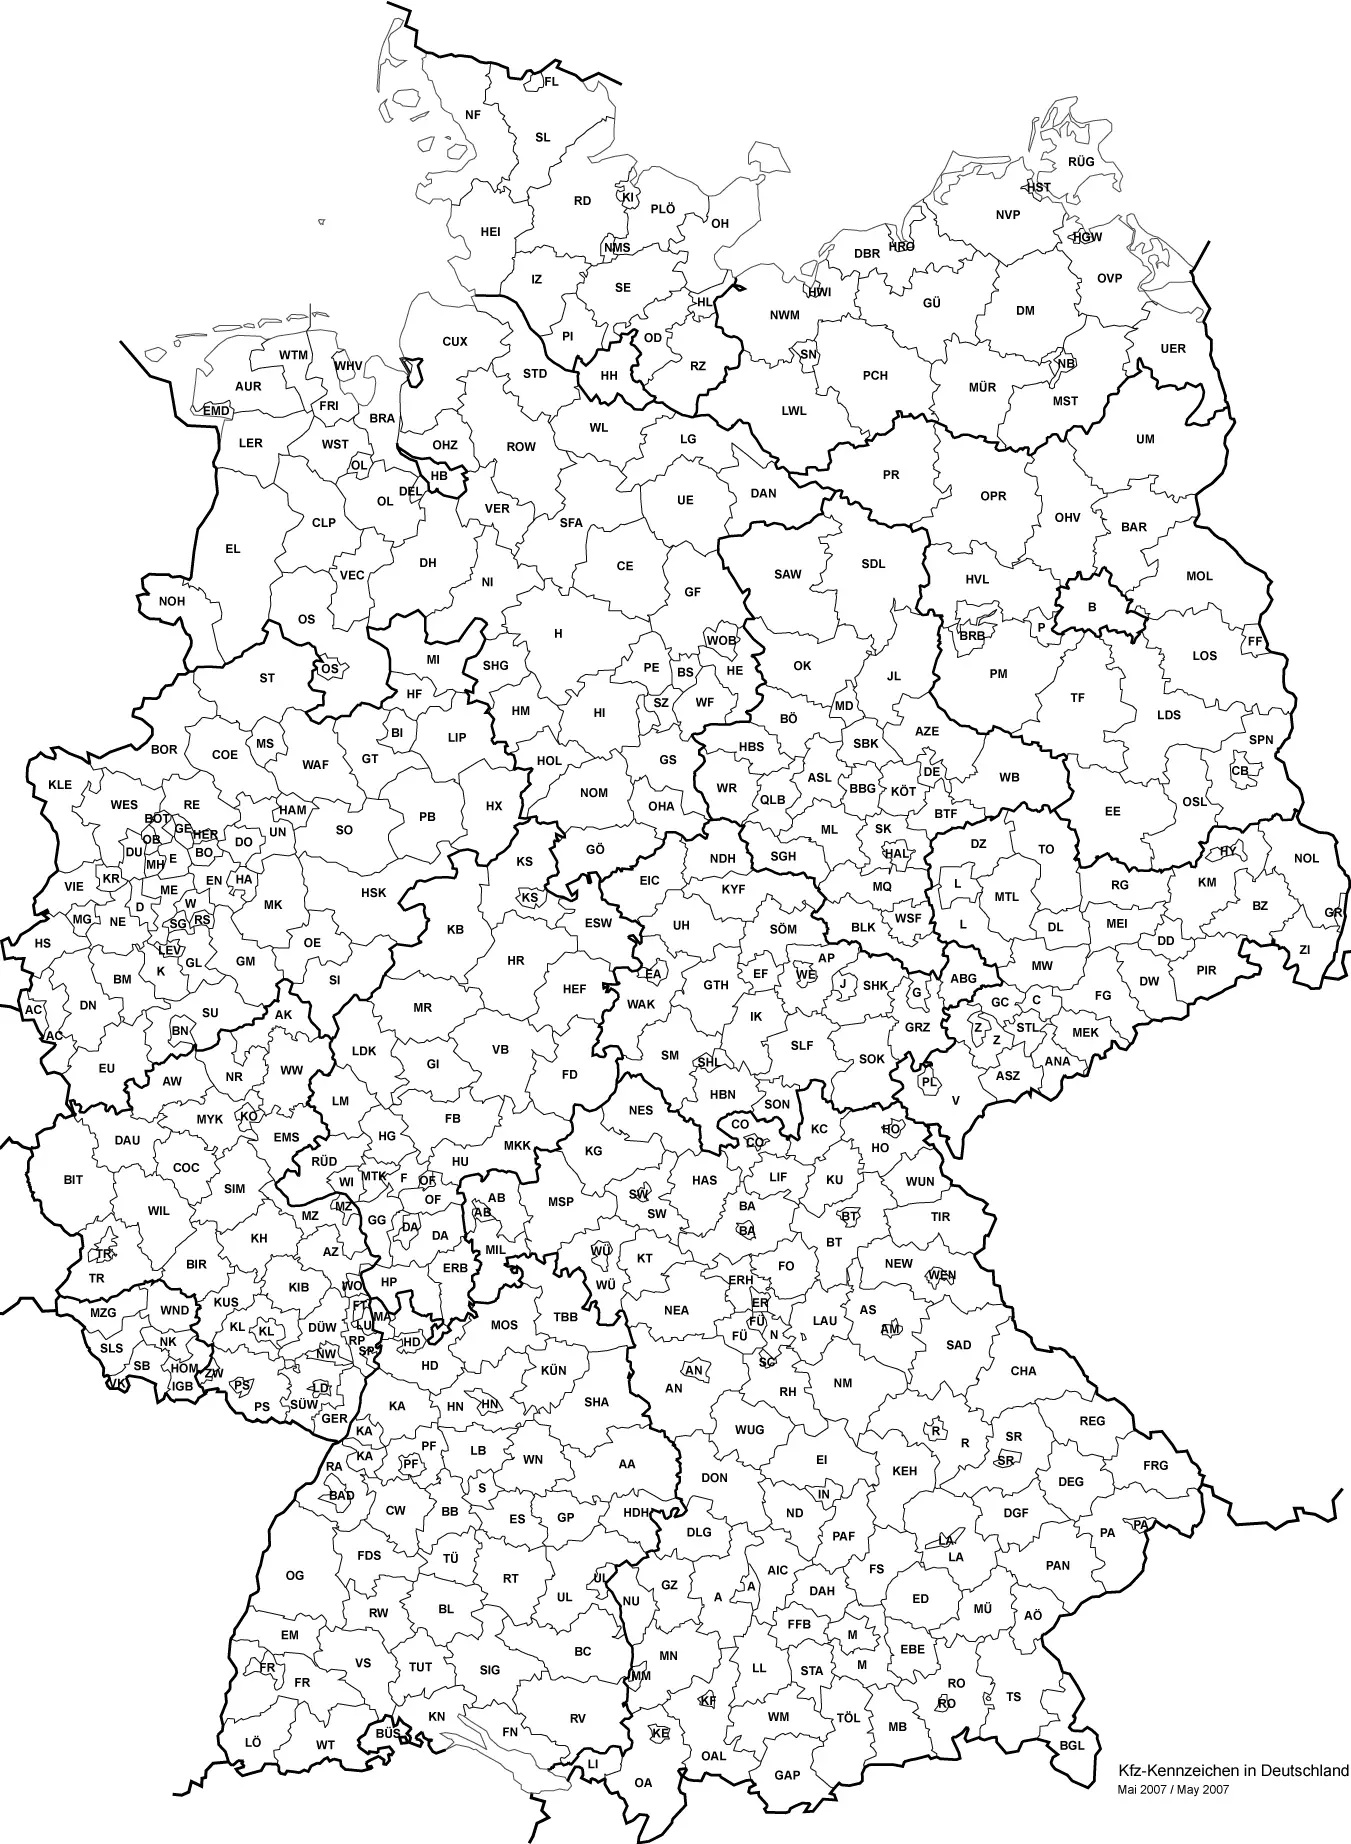 Kfz Kennzeichen Deutschlands 06 2007